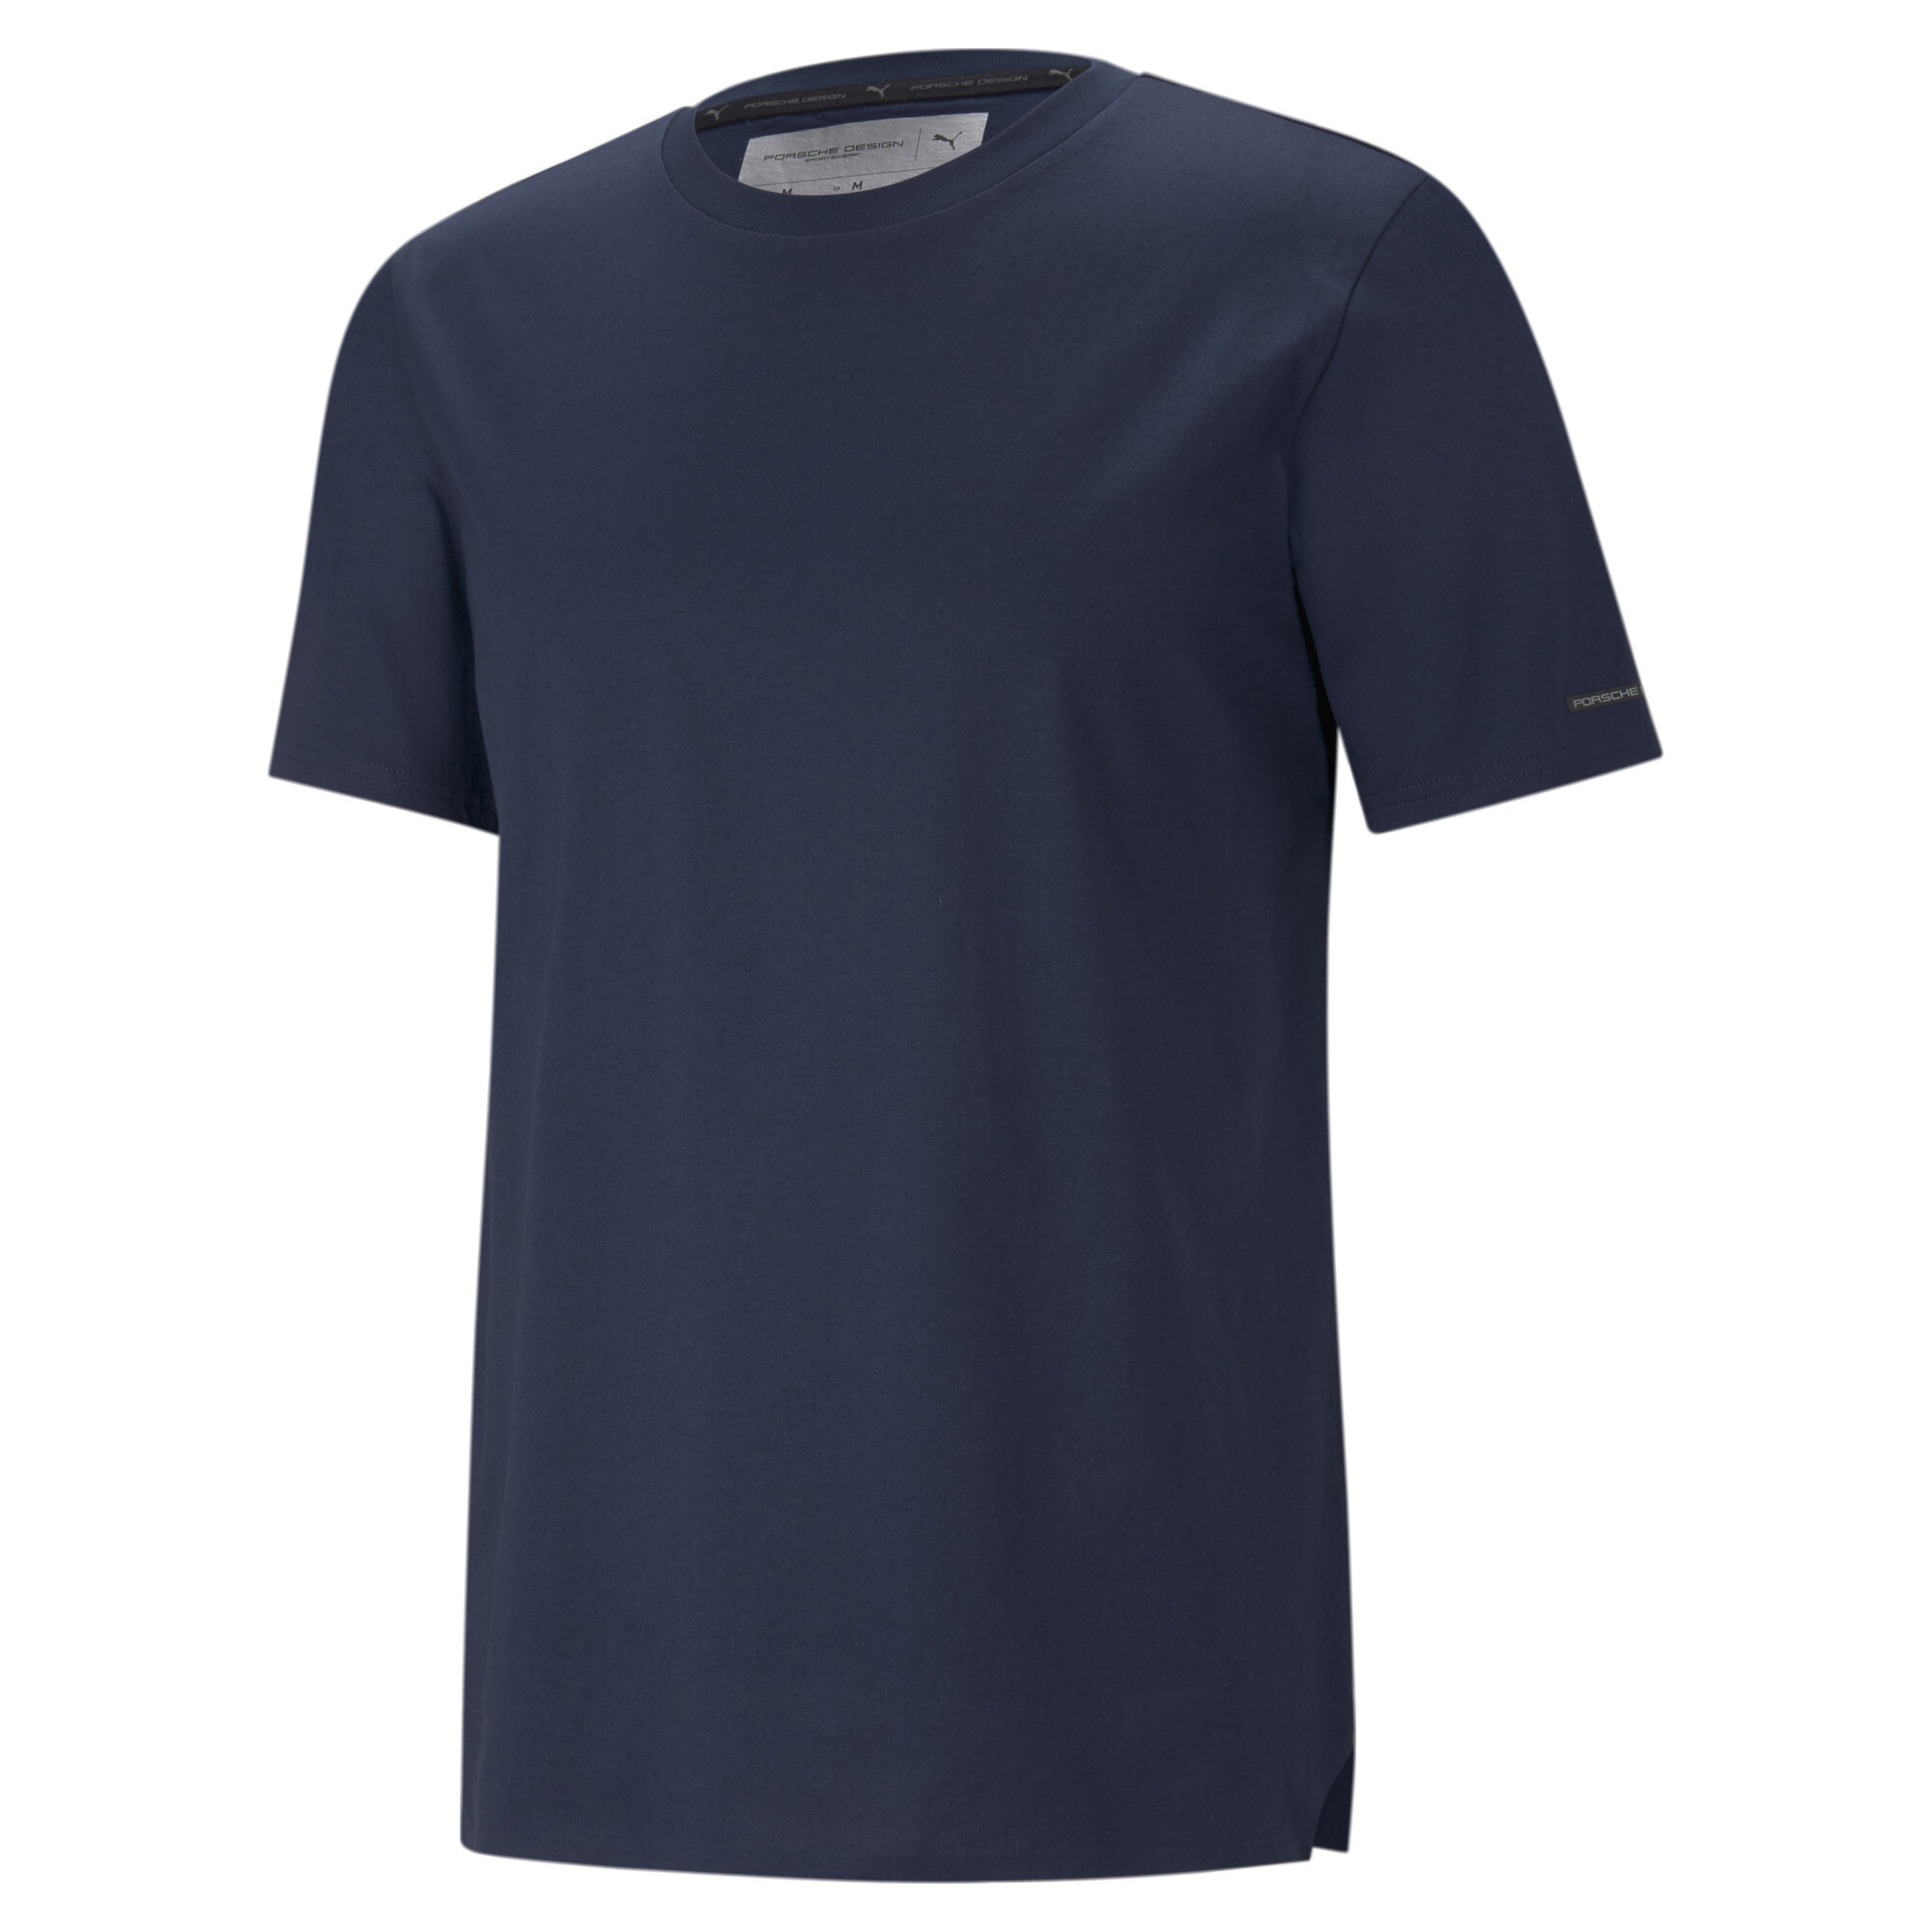  プーマ メンズ ポルシェ デザイン エッセンシャル 半袖 Tシャツ メンズ Navy Blazer ｜PUMA.com